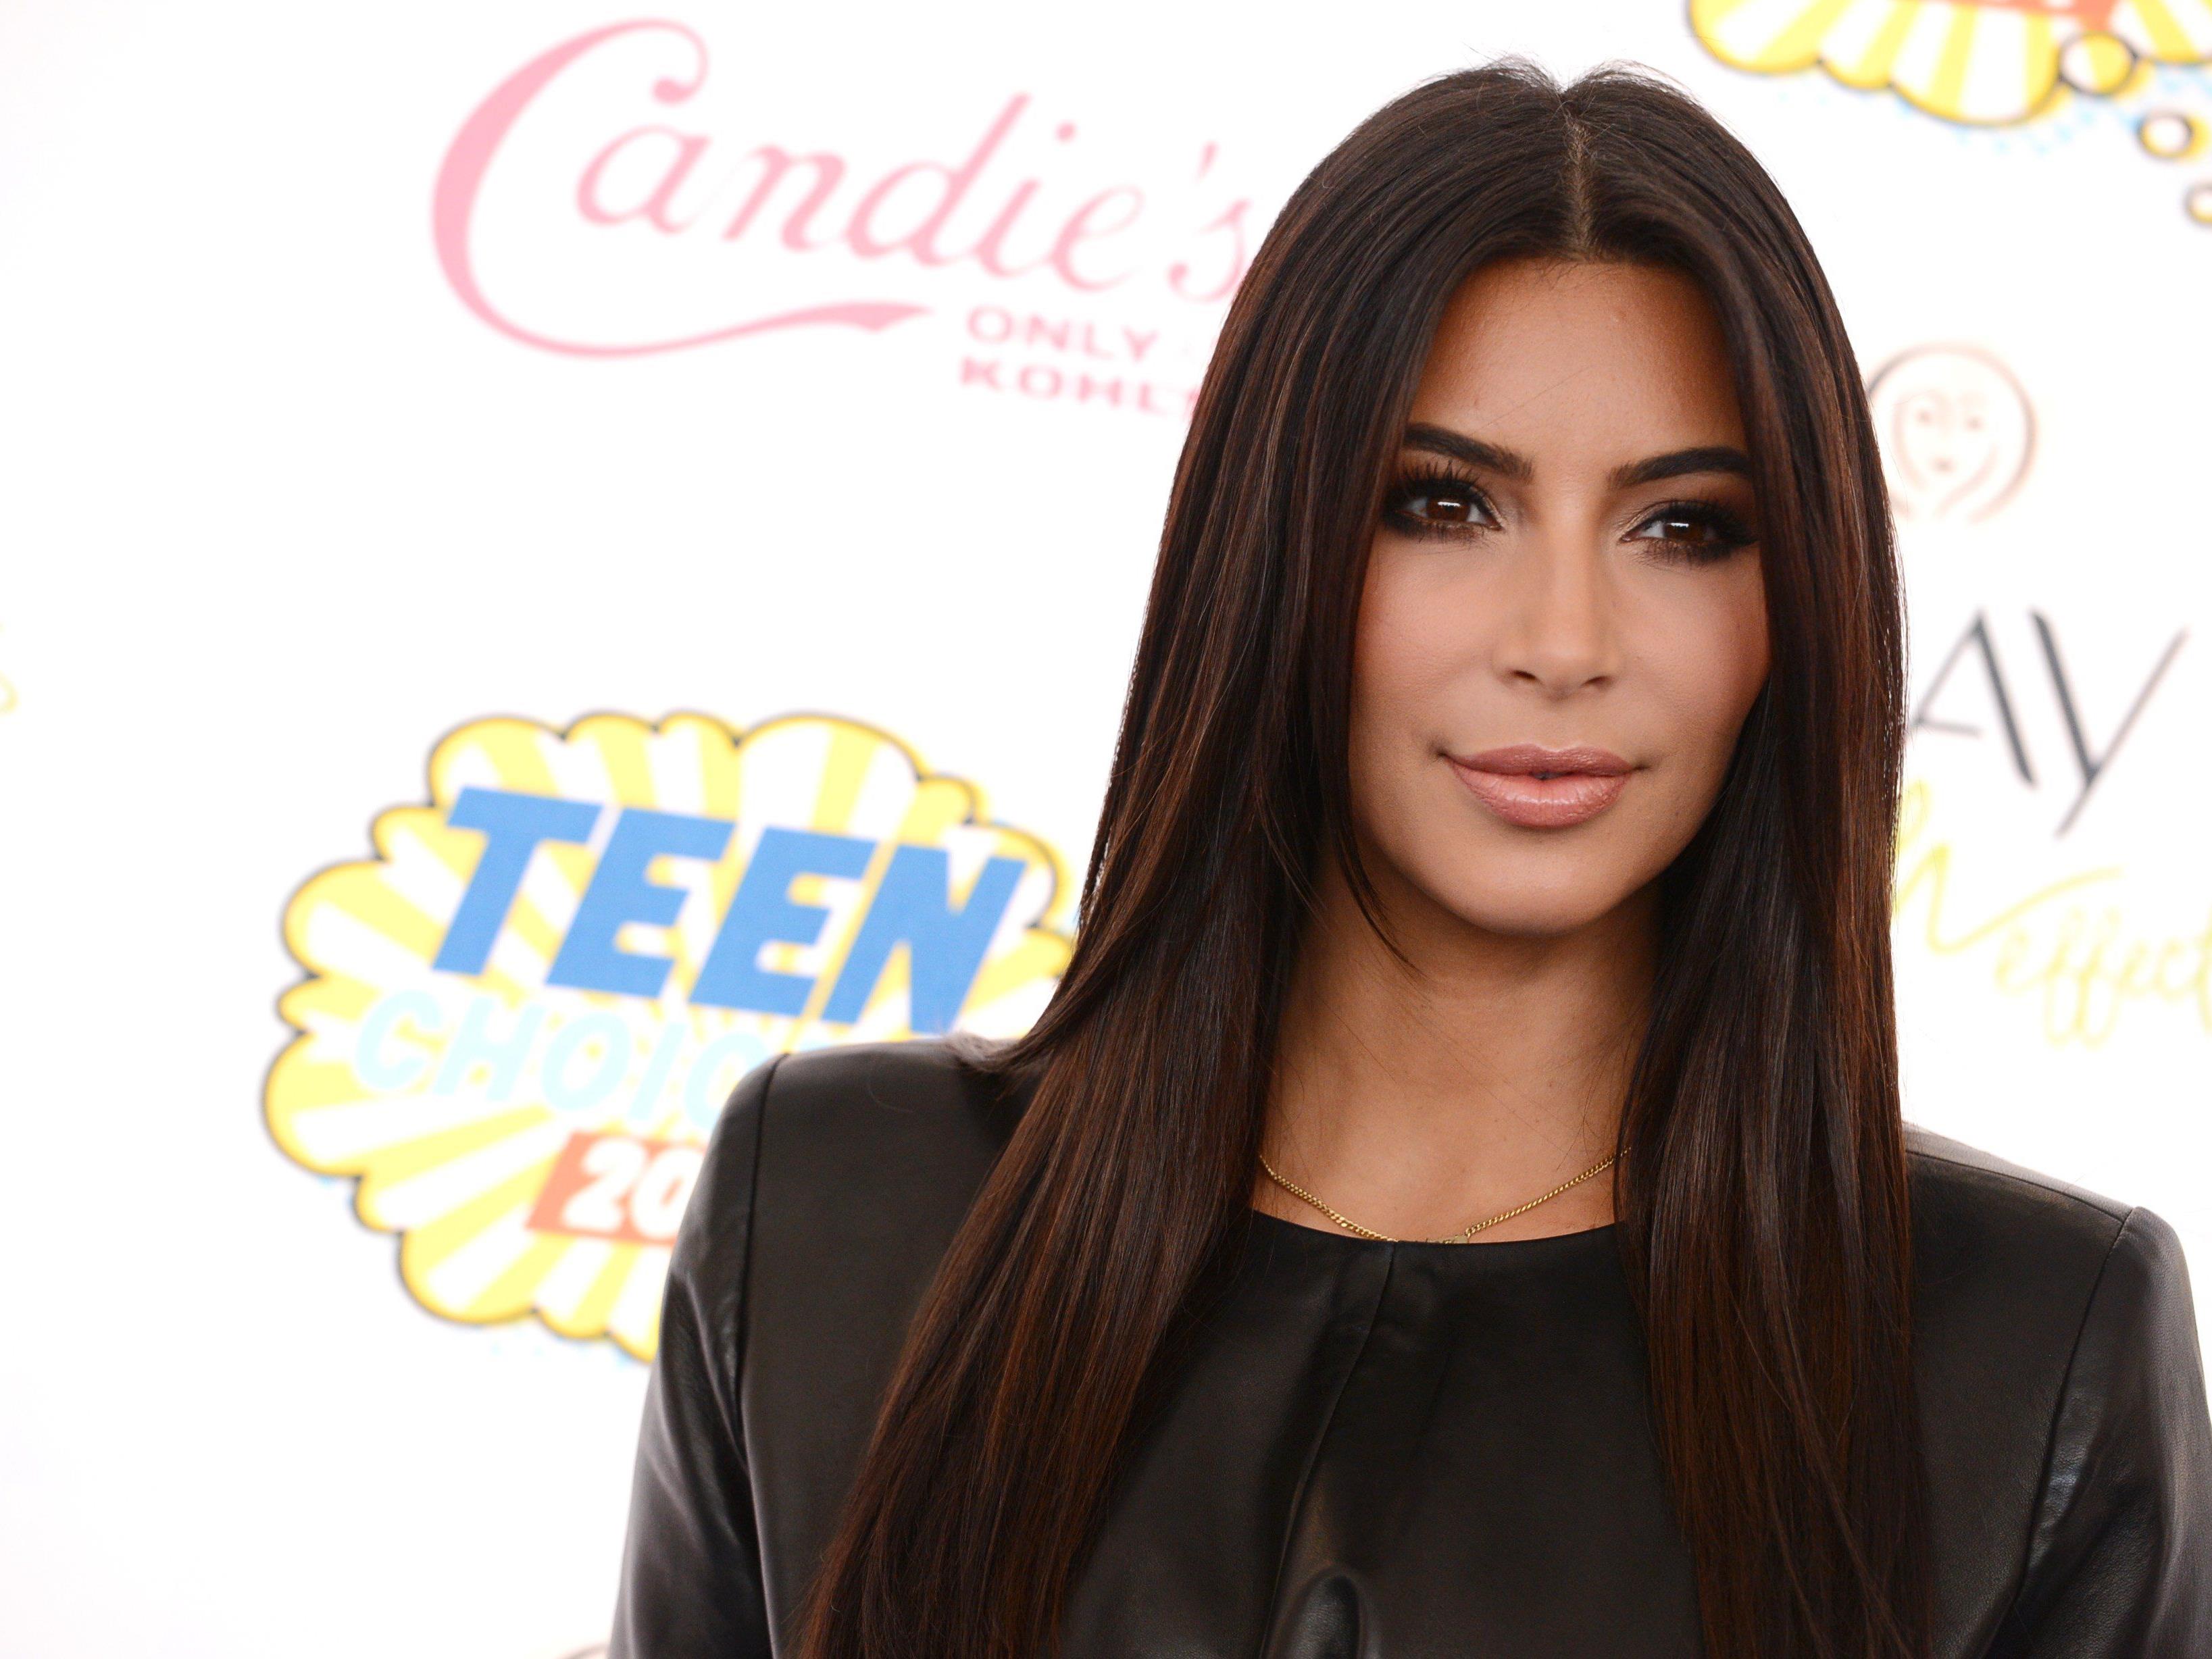 Das Nacktbild von Kim Kardashian löste ein regelrechtes Netzbeben aus.